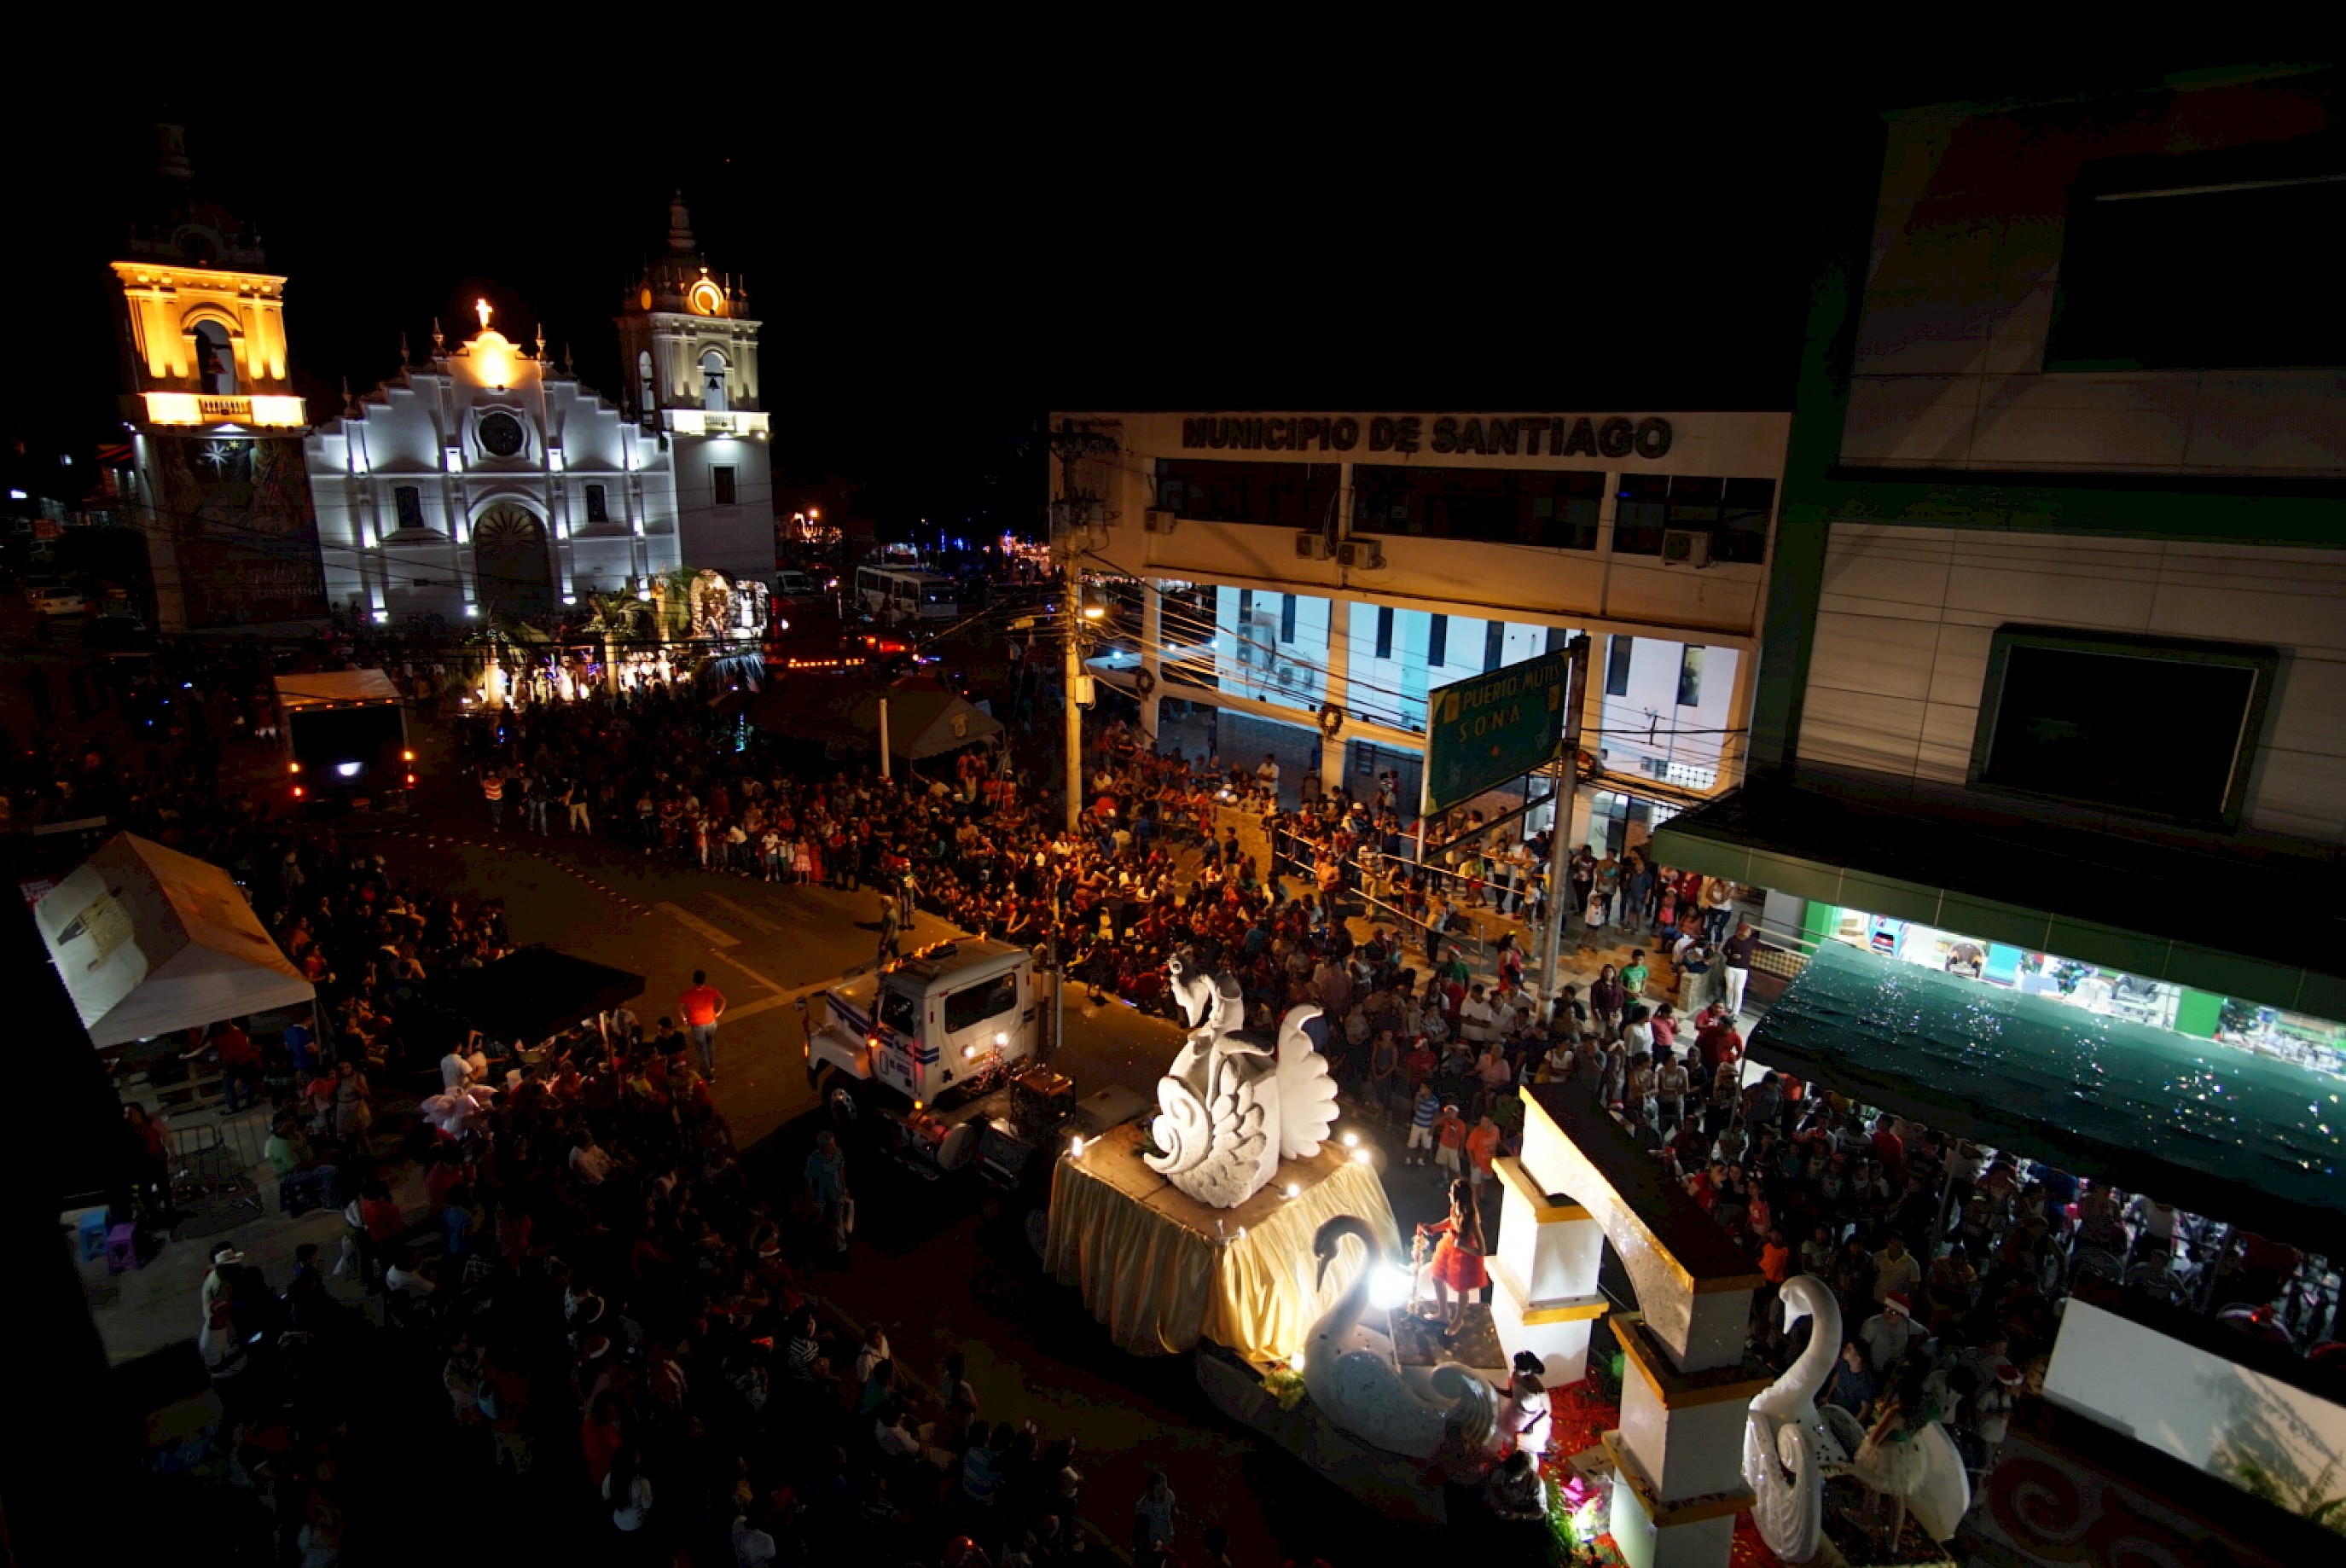 Fotografía del desfile de navidad de la ciudad de Santiago de Veraguas. El 22 de diciembre de 2018. Vista nocturna de la iglesia catedral.